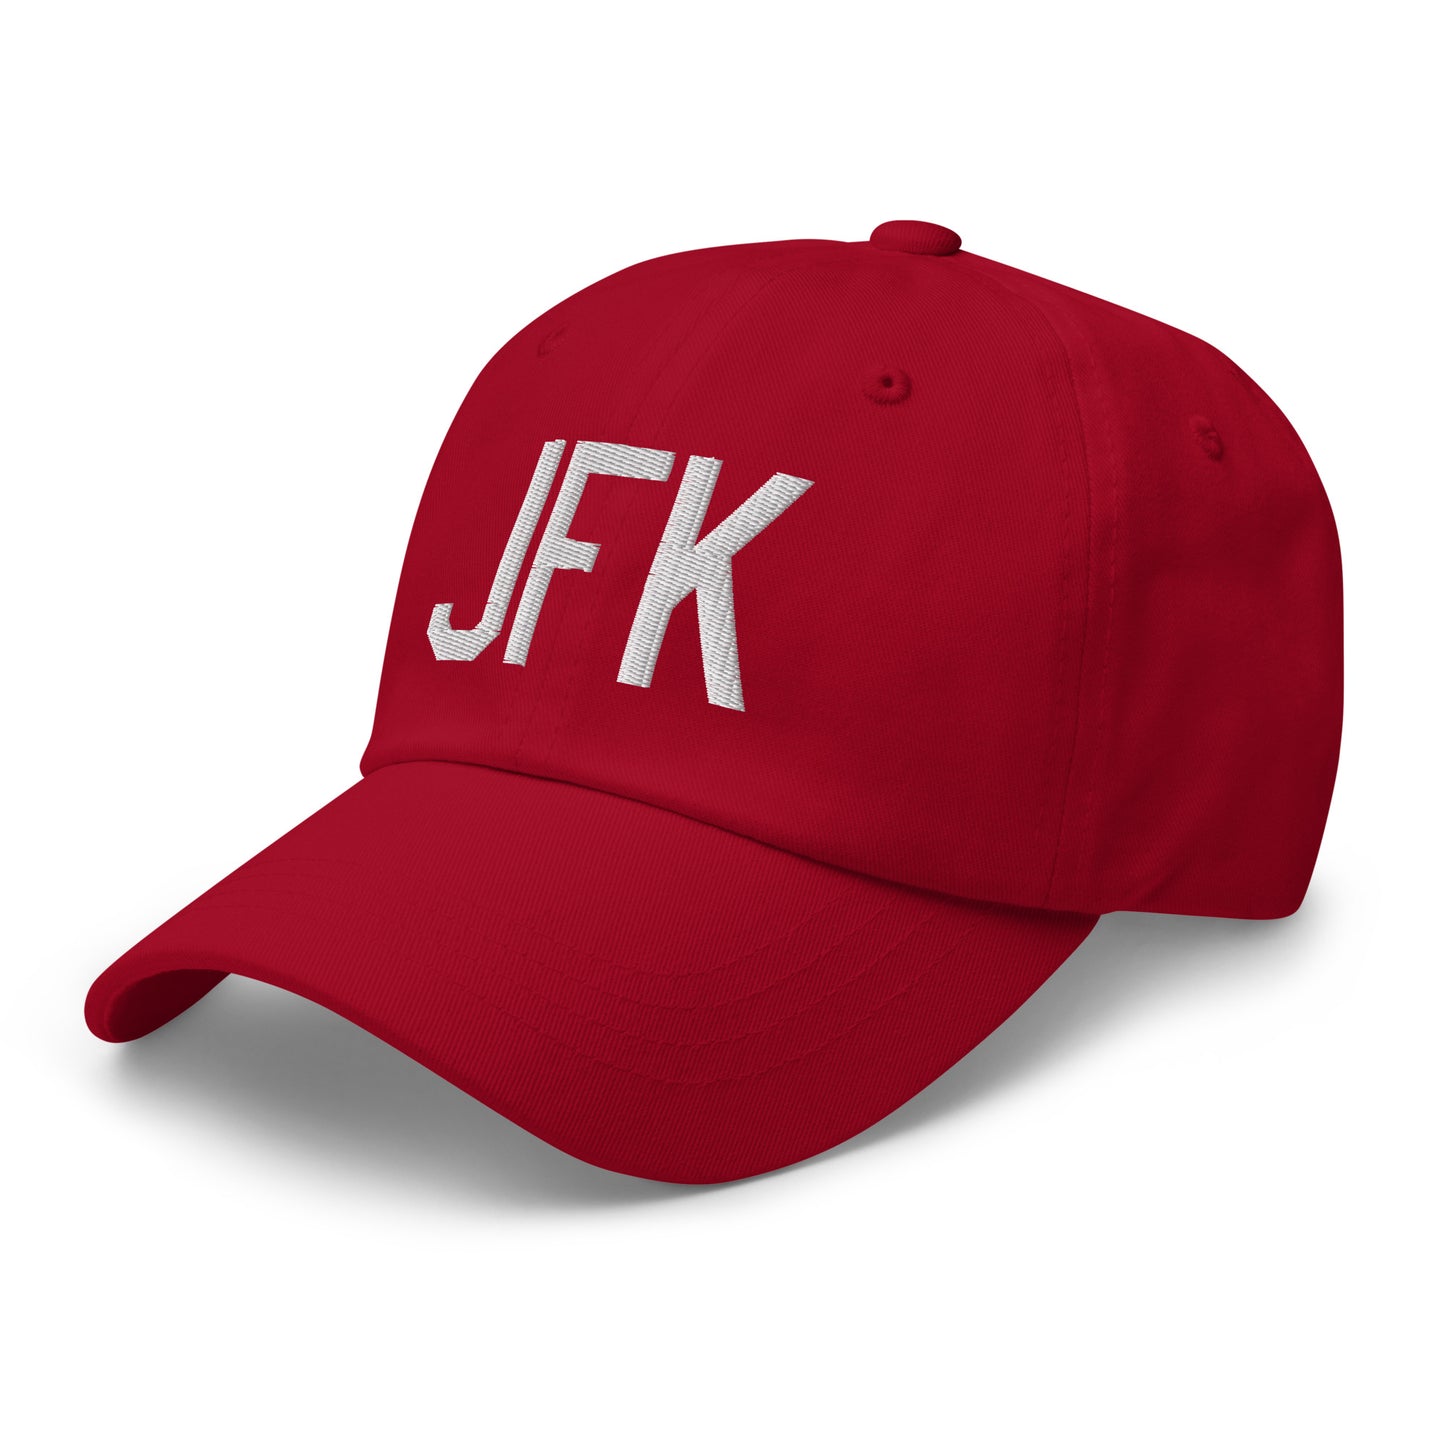 Airport Code Baseball Cap - White • JFK New York City • YHM Designs - Image 21